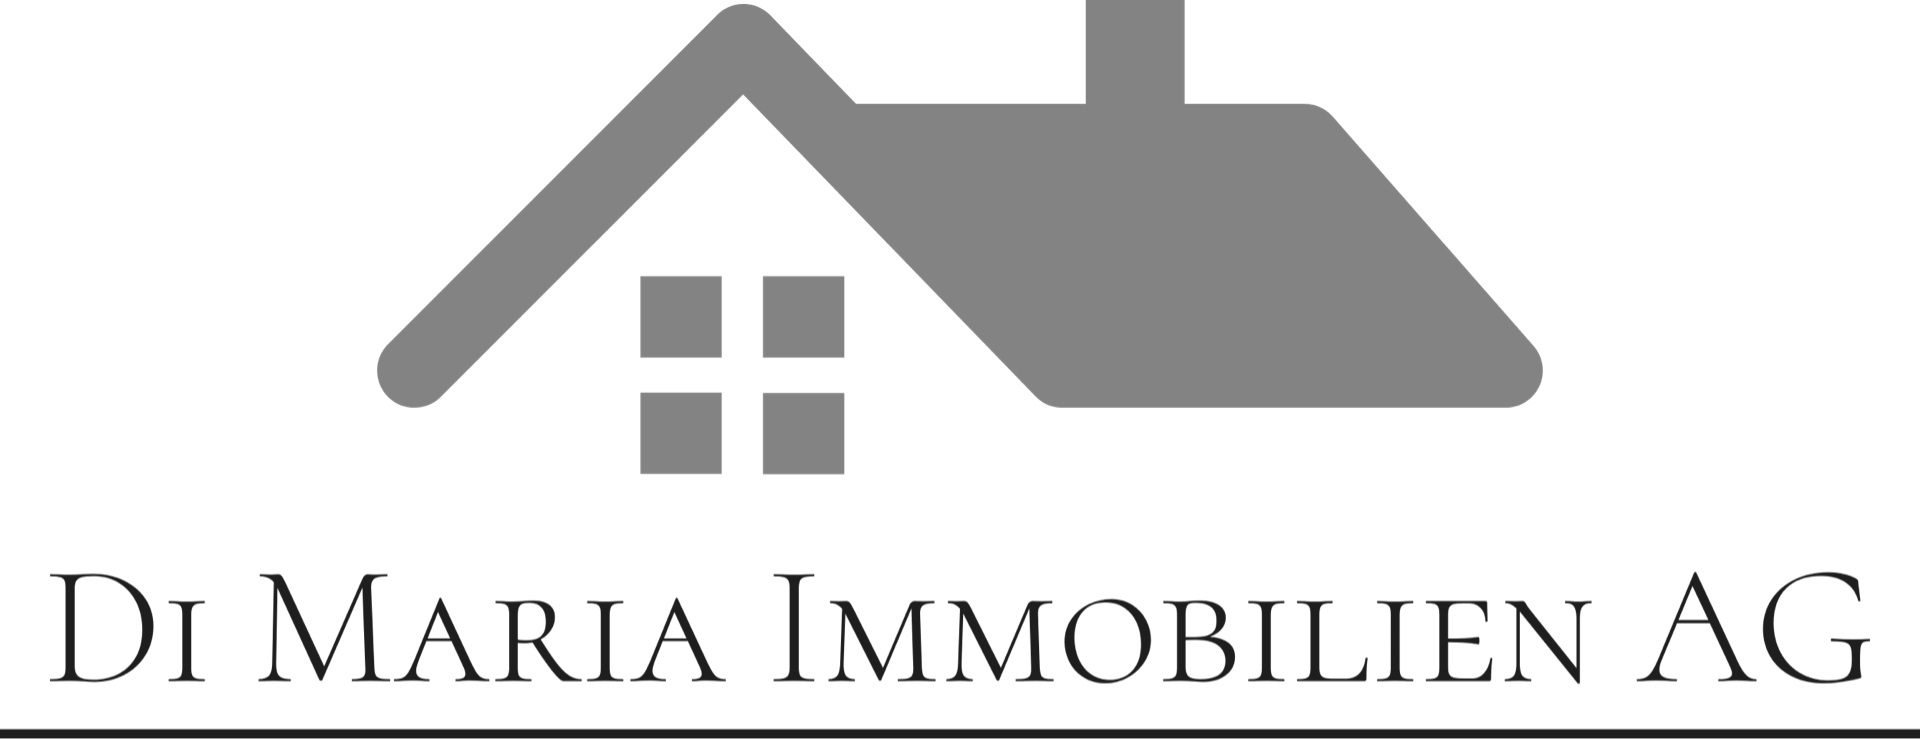 Di Maria Immobilien AG Logo